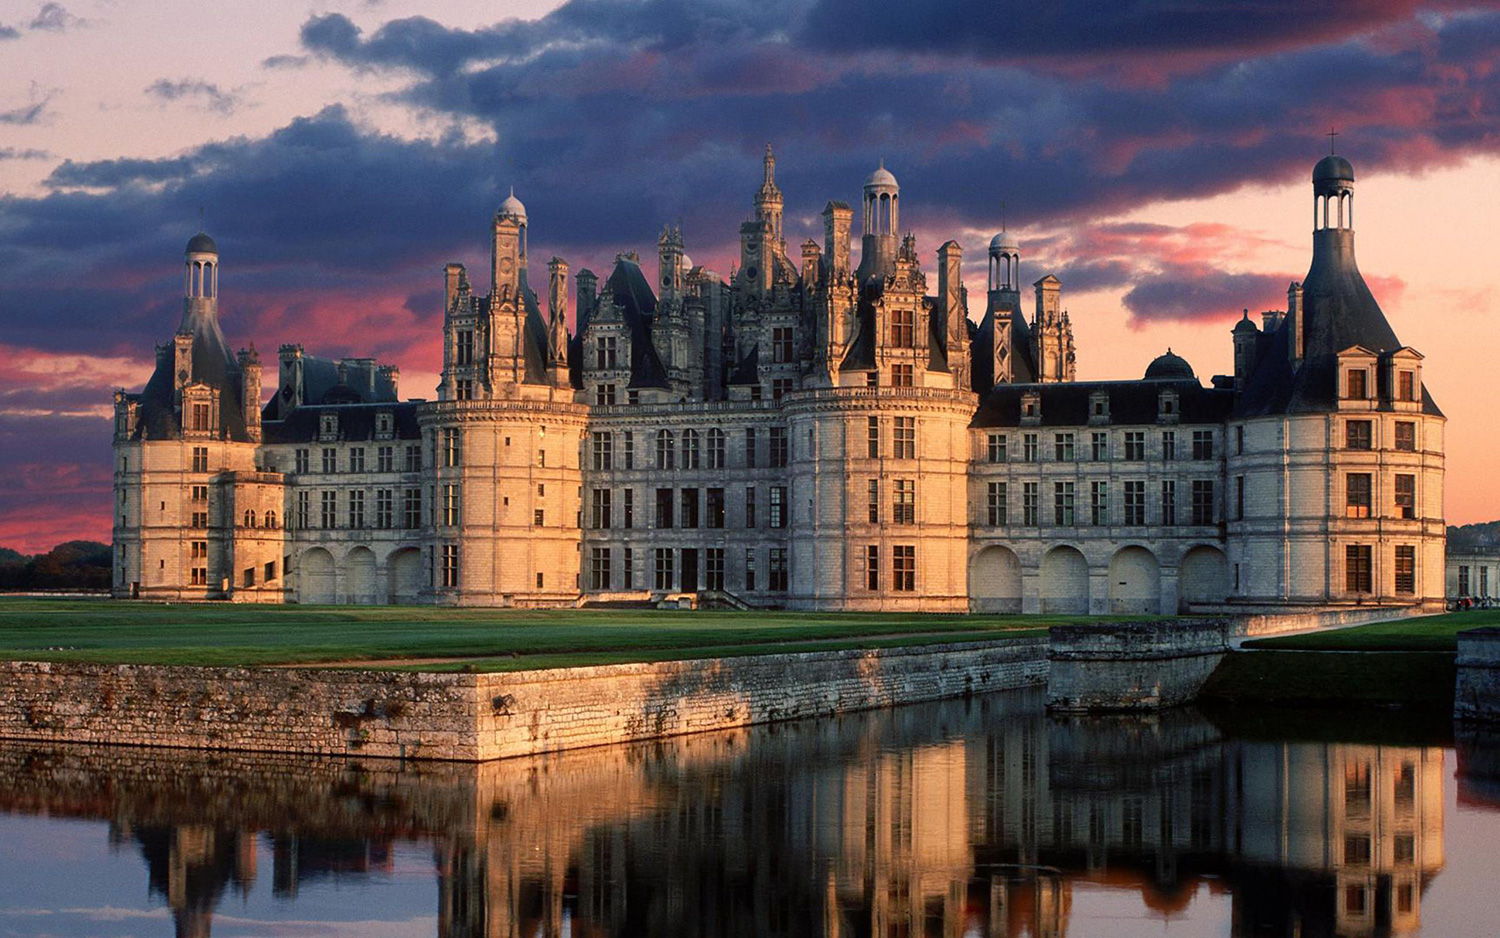 Замок Шамбор - один из самых узнаваемых замков Франции, архитектурный шедевр эпохи Ренессанса. Длина фасада 156 м, ширина 117 м, в замке 426 комнат, 77 лестниц, 282 камина и 800 скульптурно украшенных капителей
